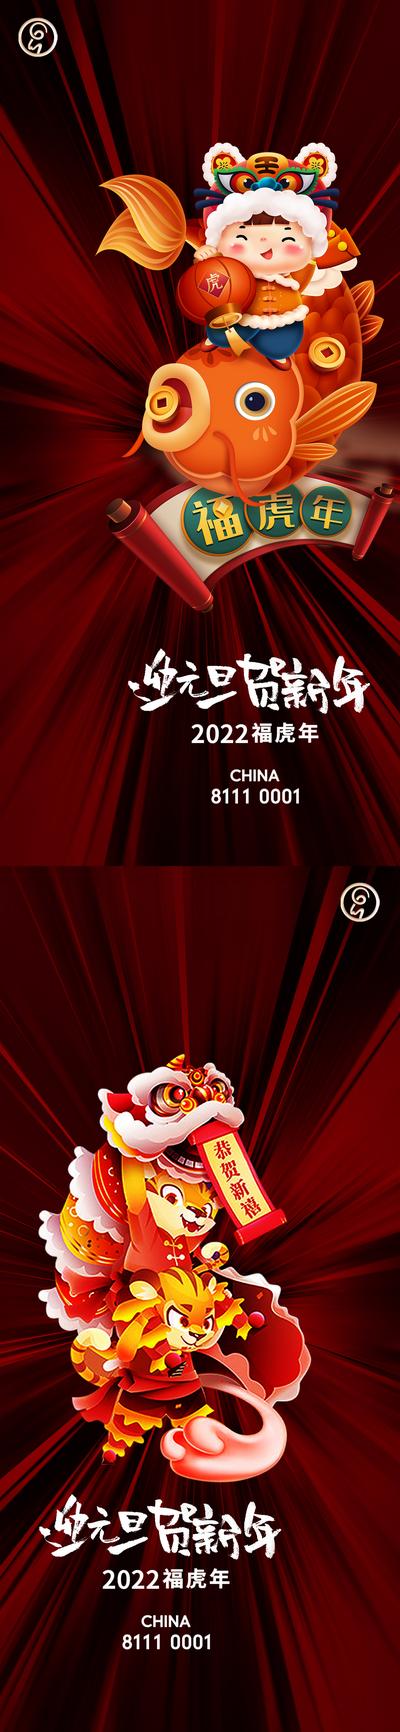 南门网 海报 公历节日  元旦 新年 春节 舞狮  福娃 插画  系列